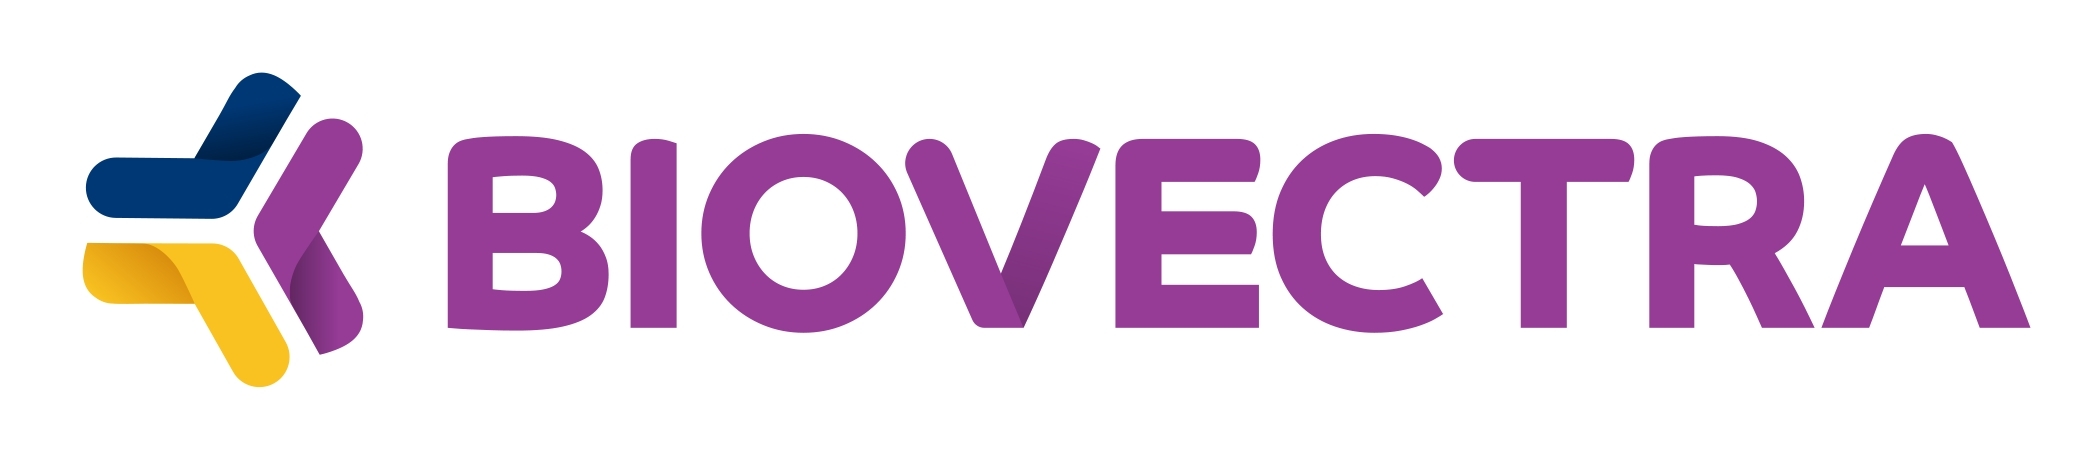 BIOVECTRA_Logo